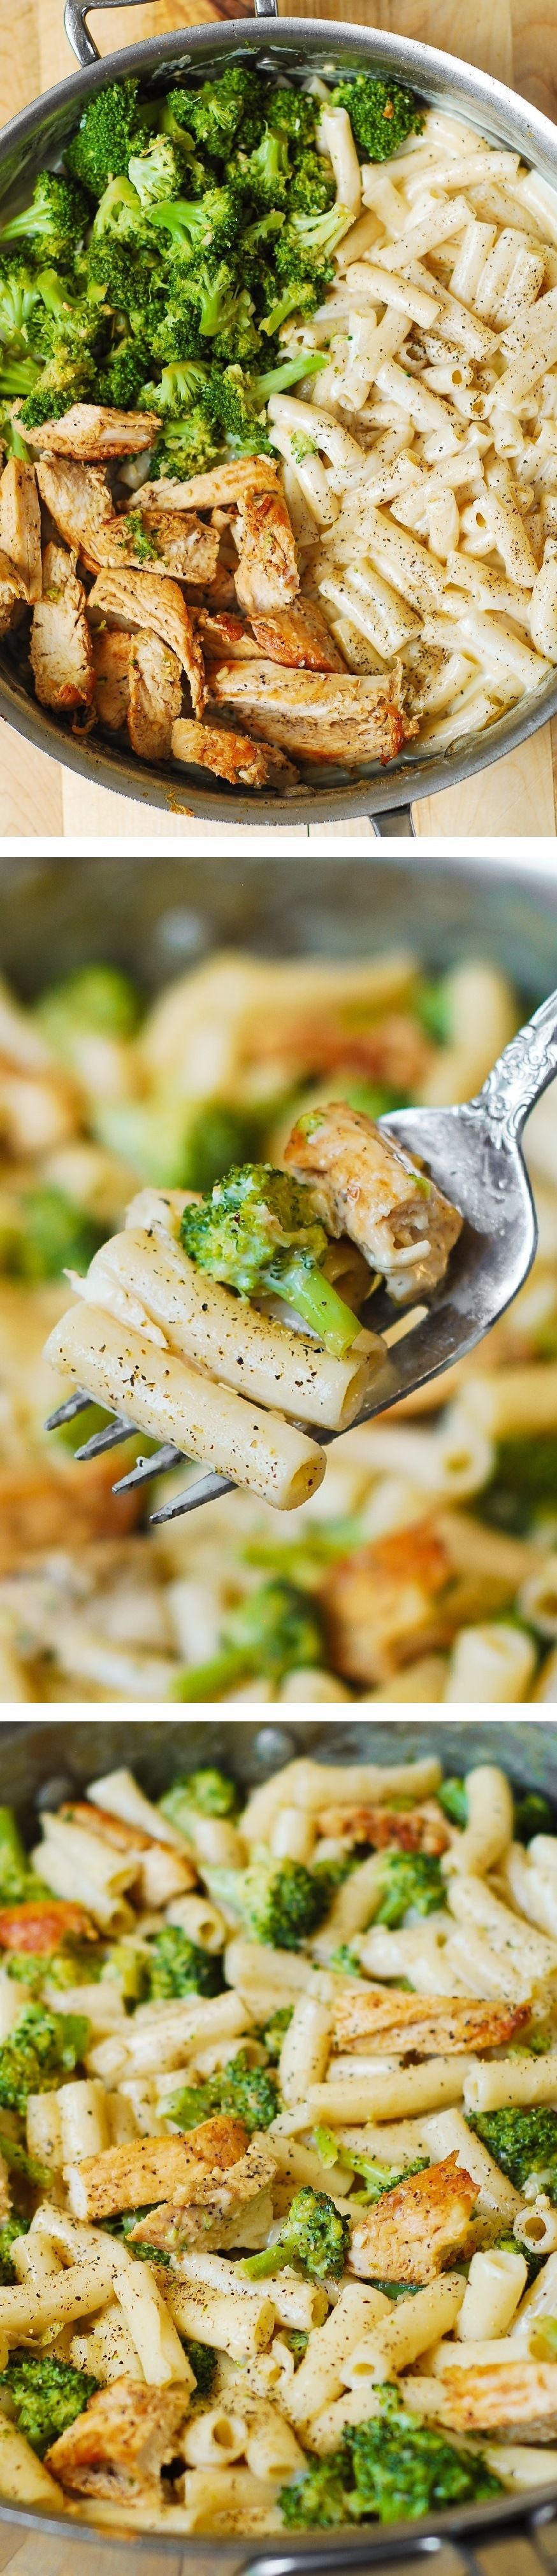 Delicious, creamy chicken breast, broccoli, garlic in a simple, homemade cream sauce. My favorite alfredo pasta!